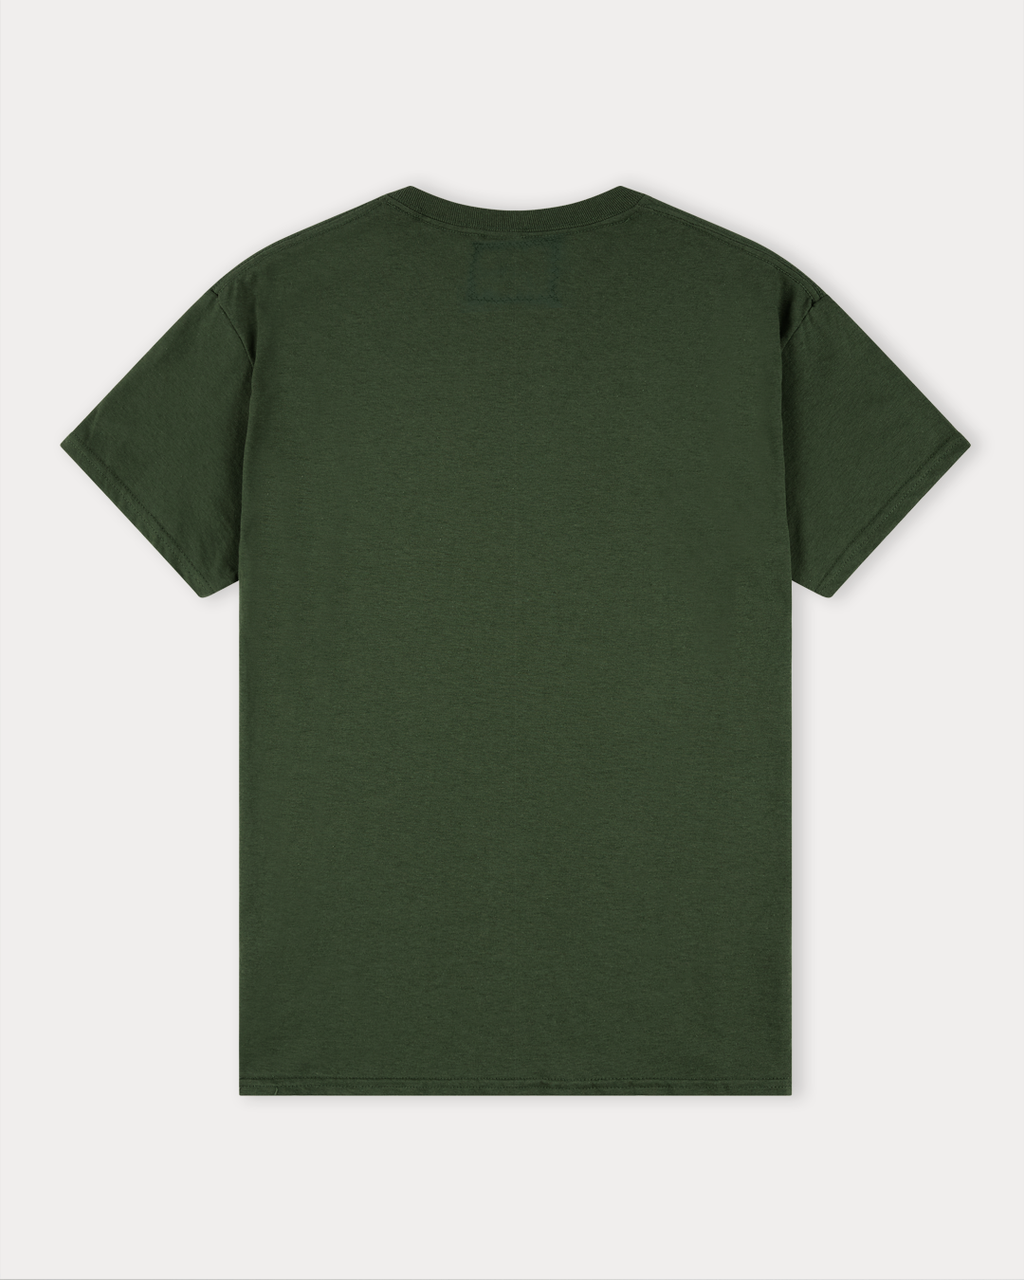 Rathouse Short Sleeve T-shirt, FOREST GREEN